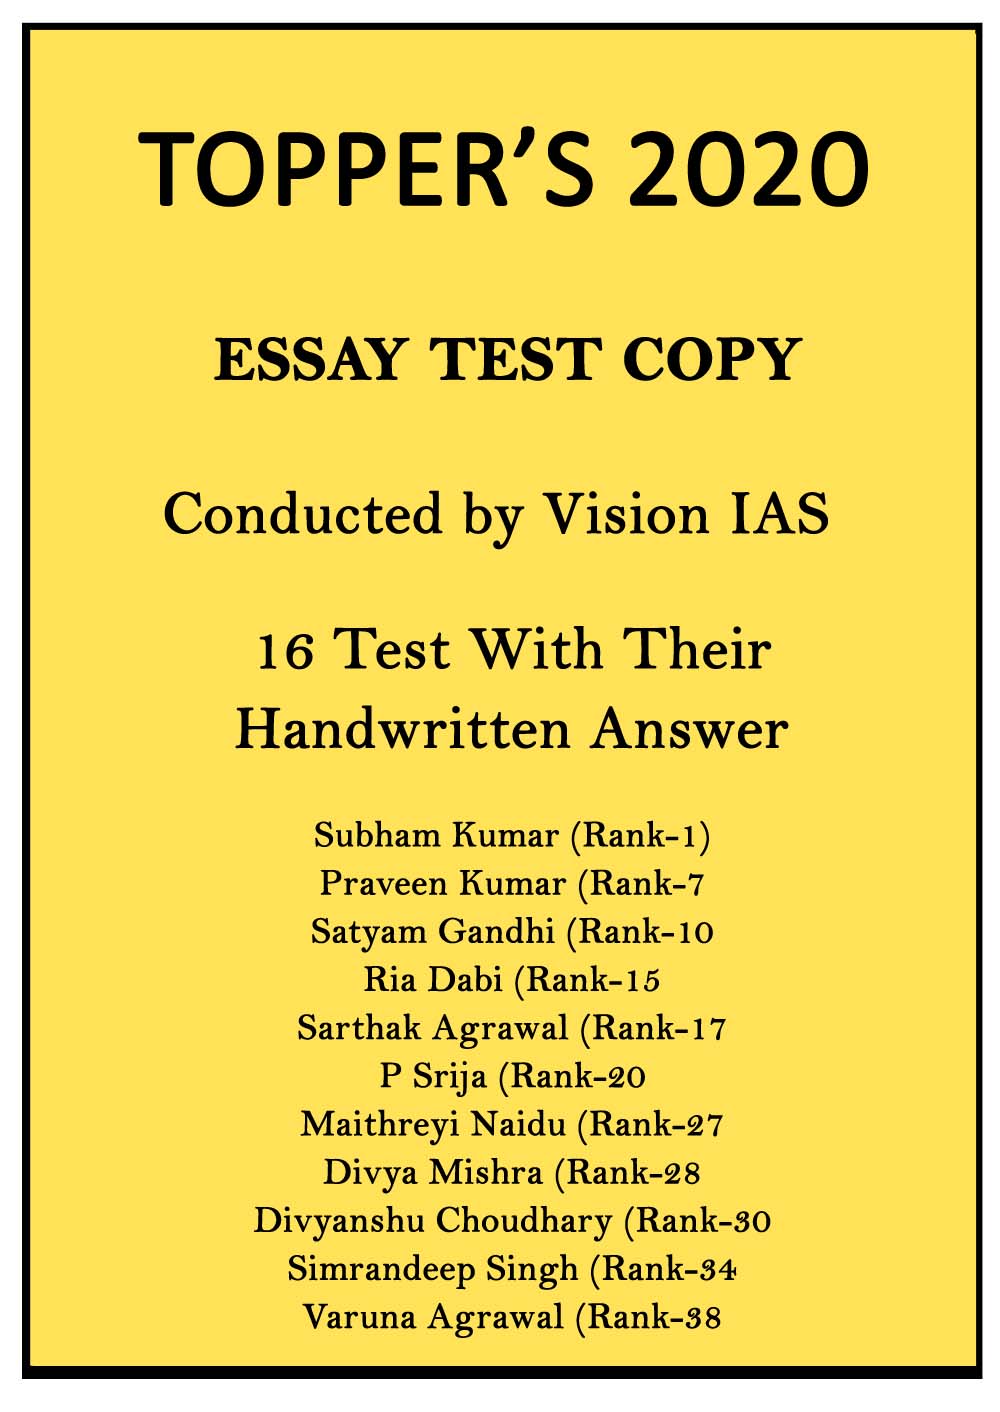 vision ias essay test series pdf